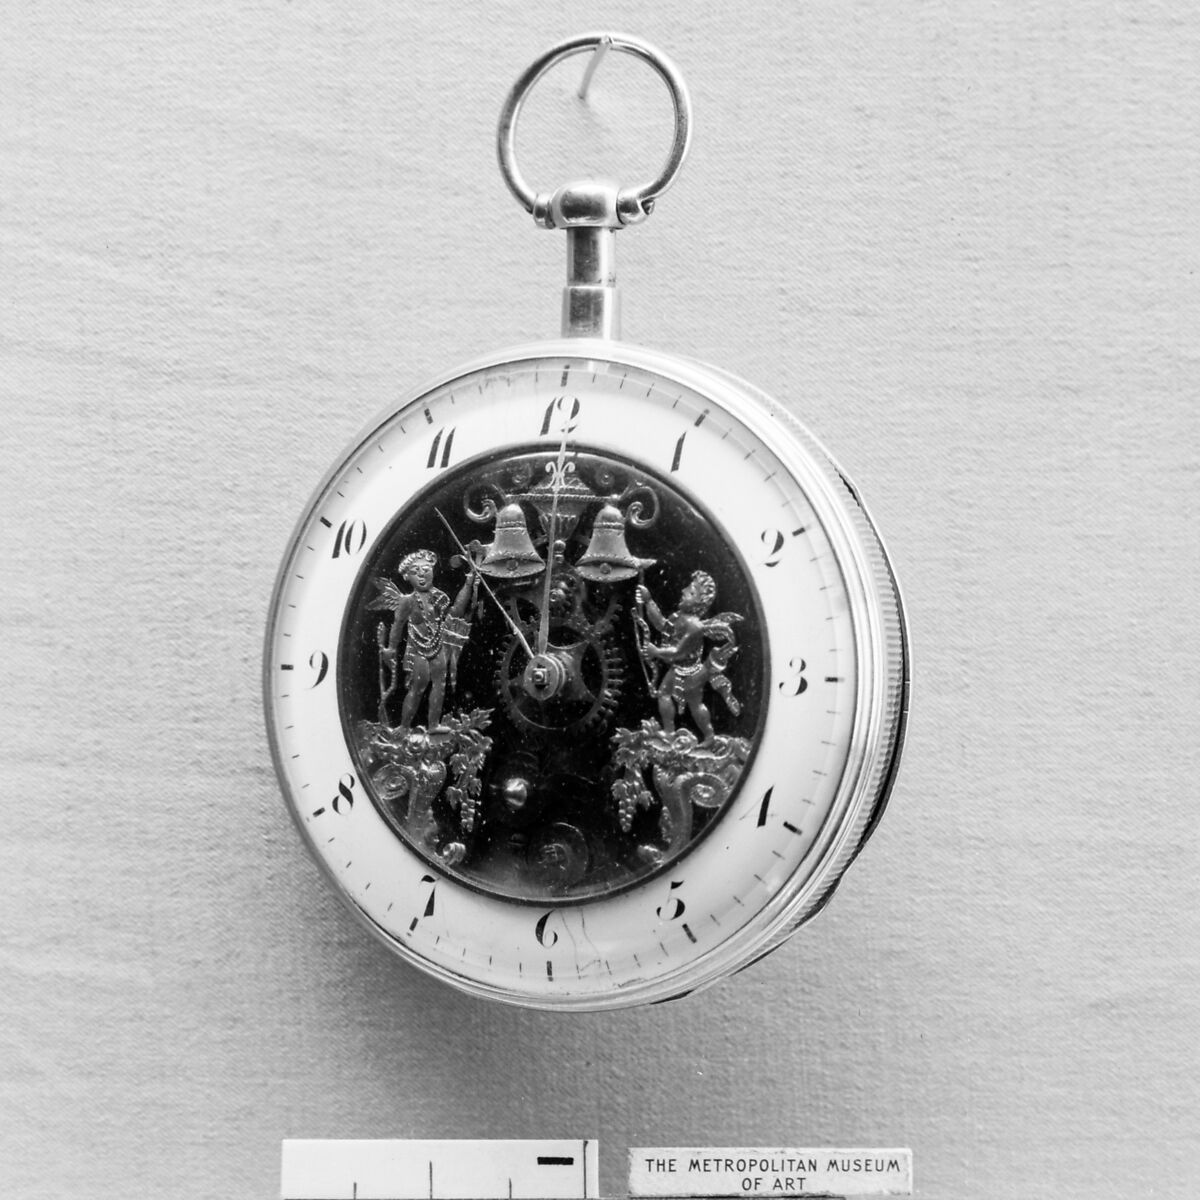 Repeater pocket watch, Gold, silver, enamel, Swiss, La Chaux-de-Fonds 